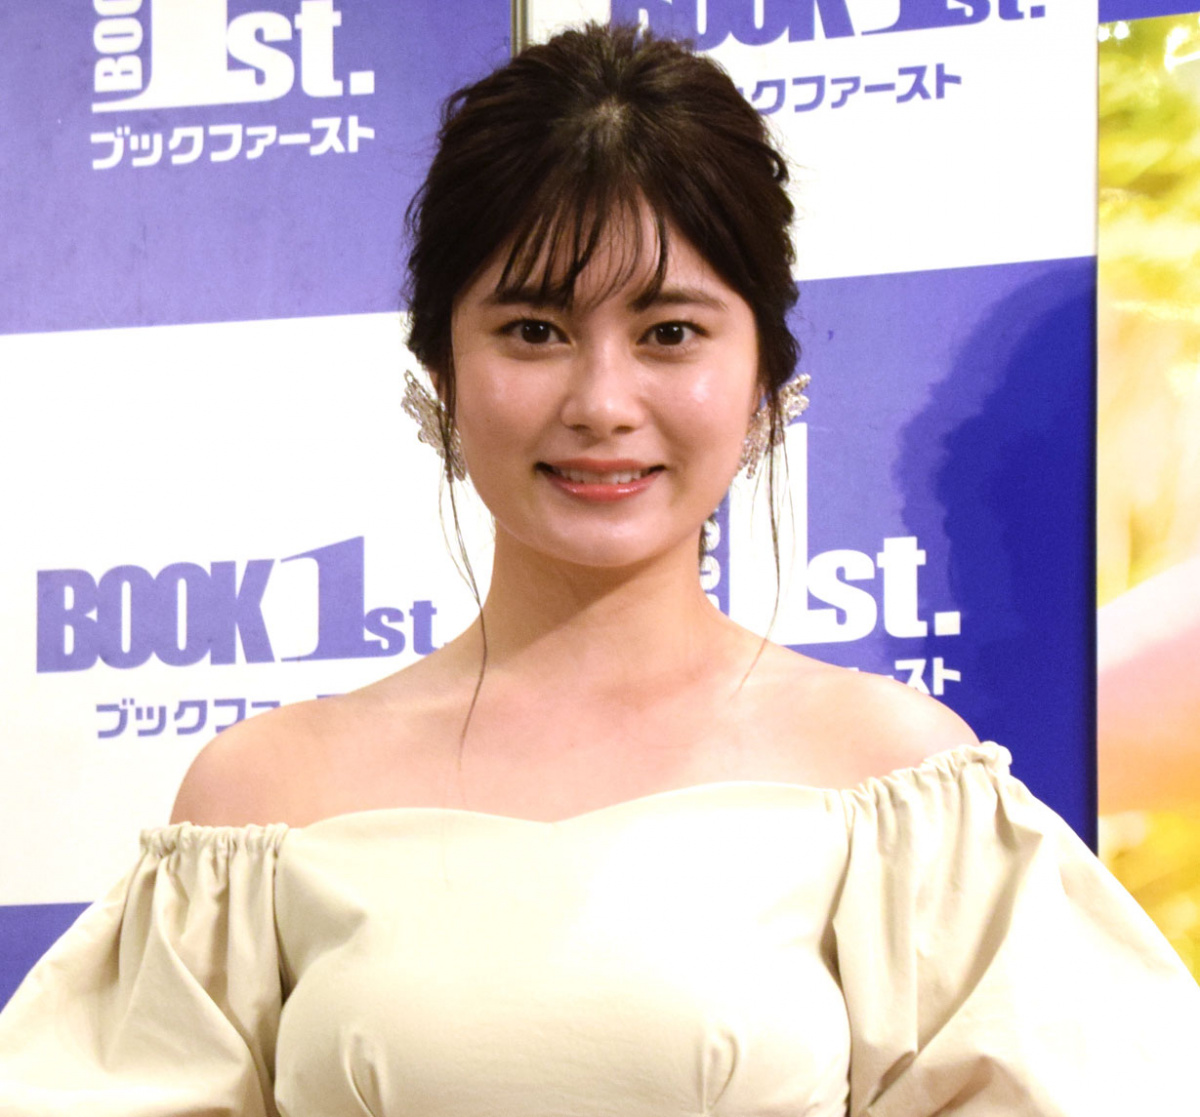 大久保桜子 水着 セクシー撮影に初挑戦 自分の知らない一面を Oricon News